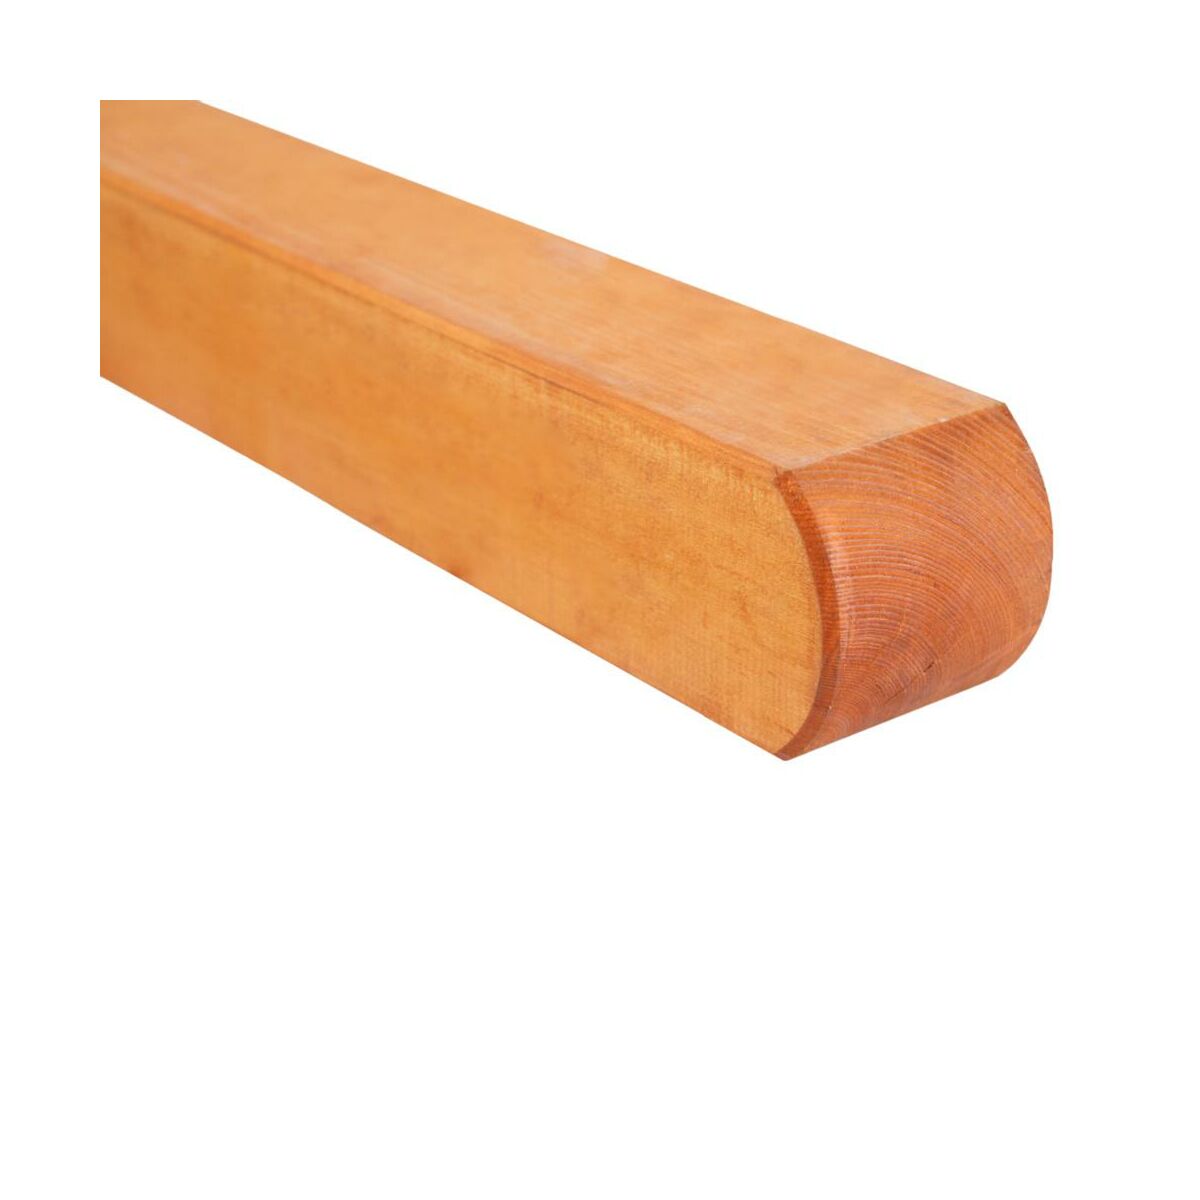 Kantówka drewniana Bern 9x9x100 cm brązowa Werth-Holz